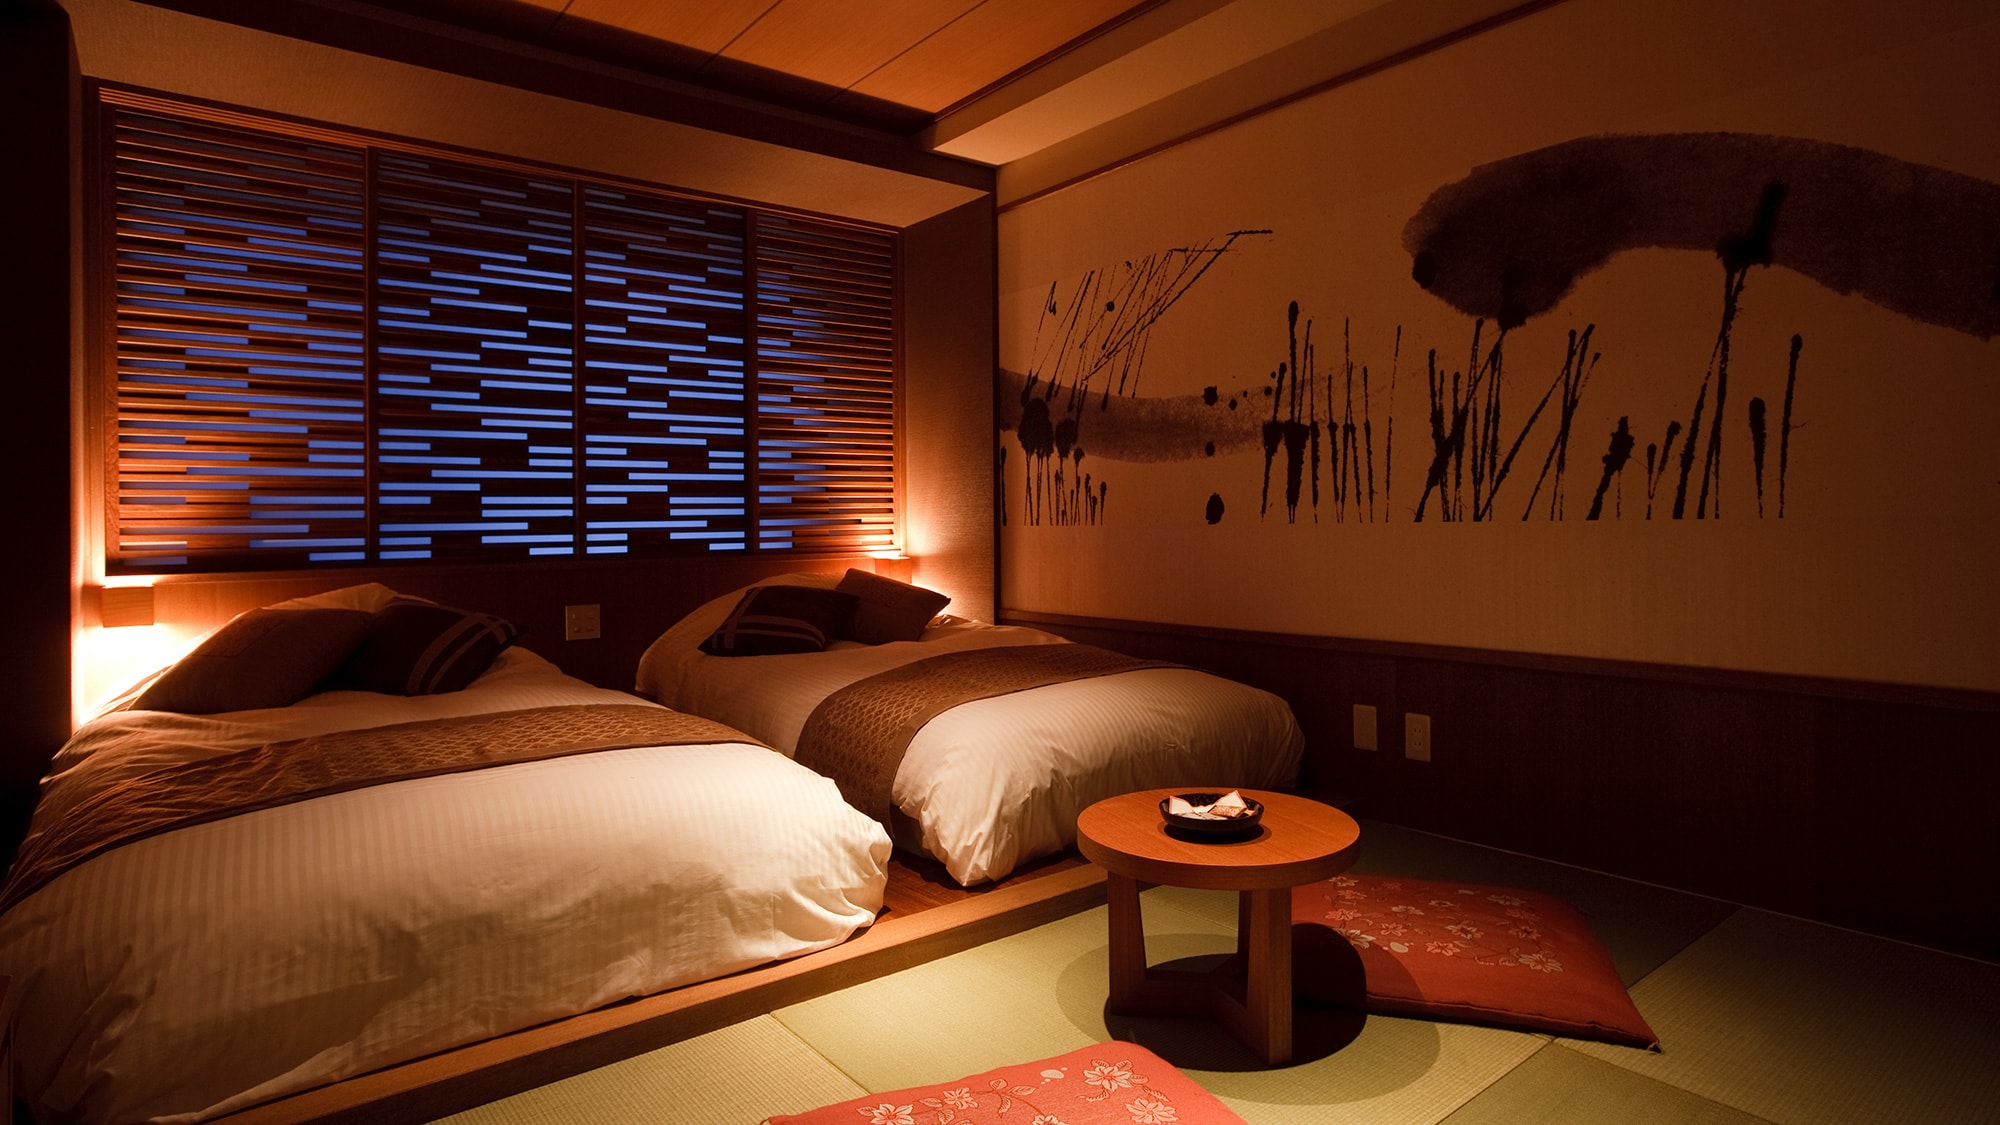 [สไตล์ญี่ปุ่นสมัยใหม่] ห้องพักยอดนิยมพร้อมเสื่อทาทามิและเตียงเตี้ย ขนาด21㎡